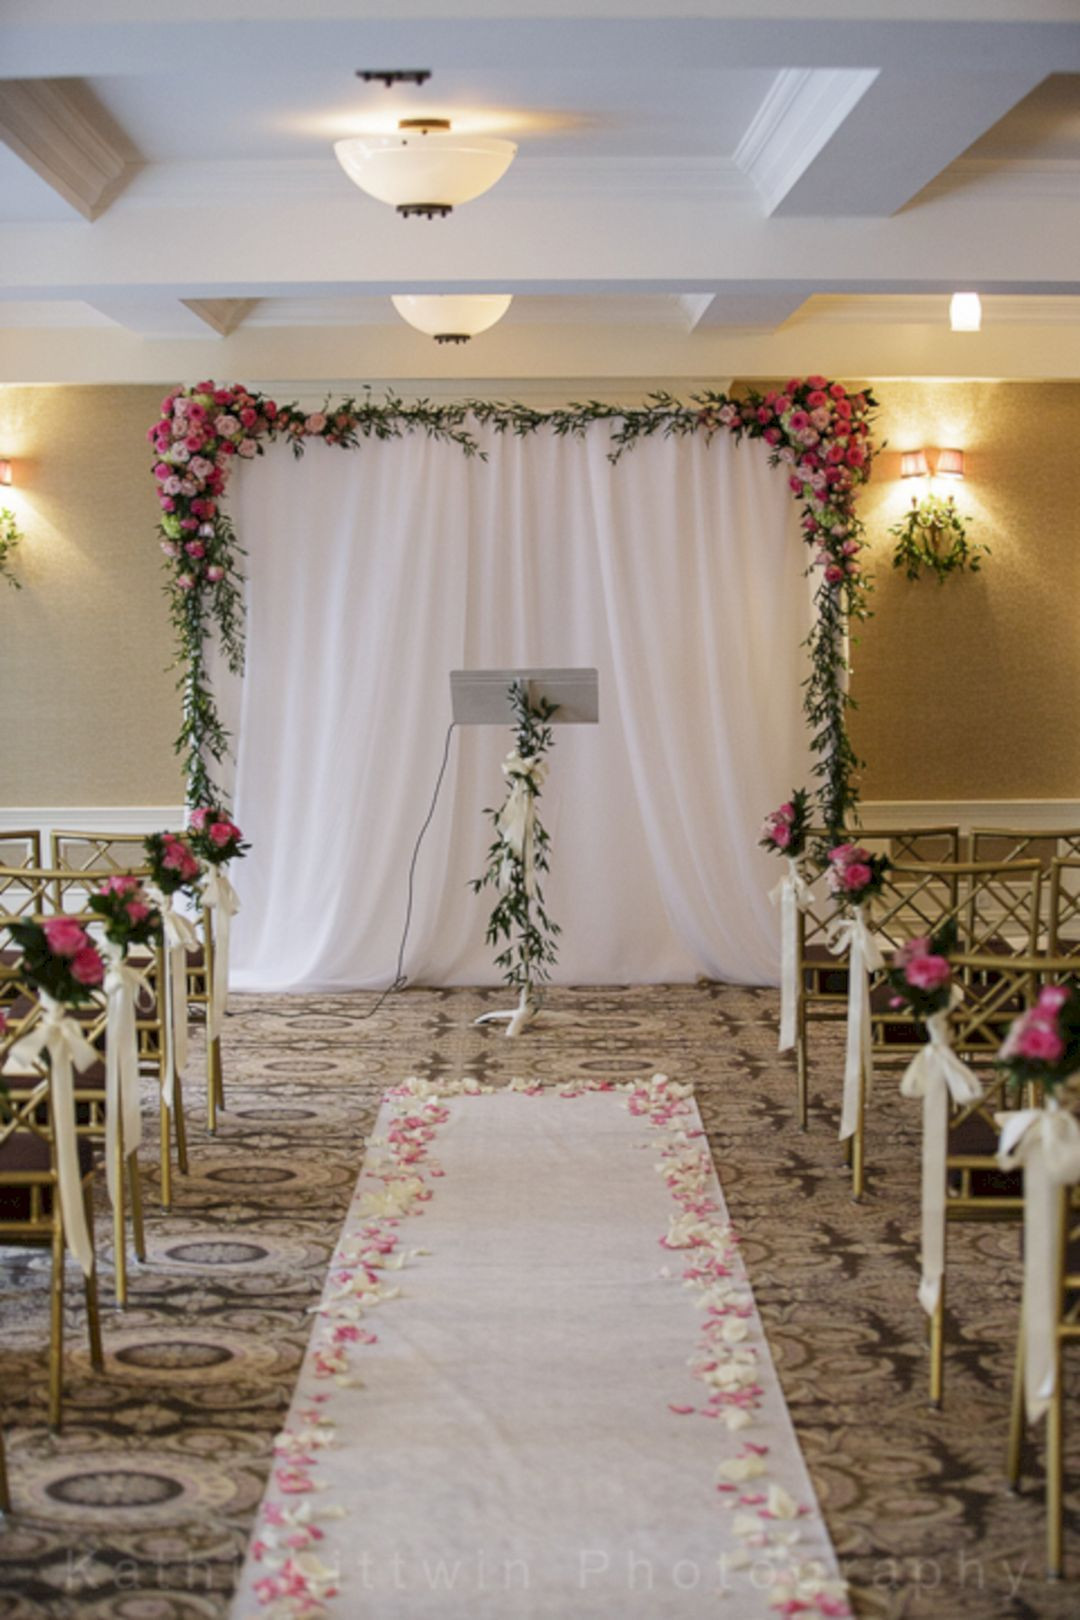 DIY Wedding Ceremony Backdrops
 30 Simple Wedding Backdrop Ideas For Your Wedding Ceremony